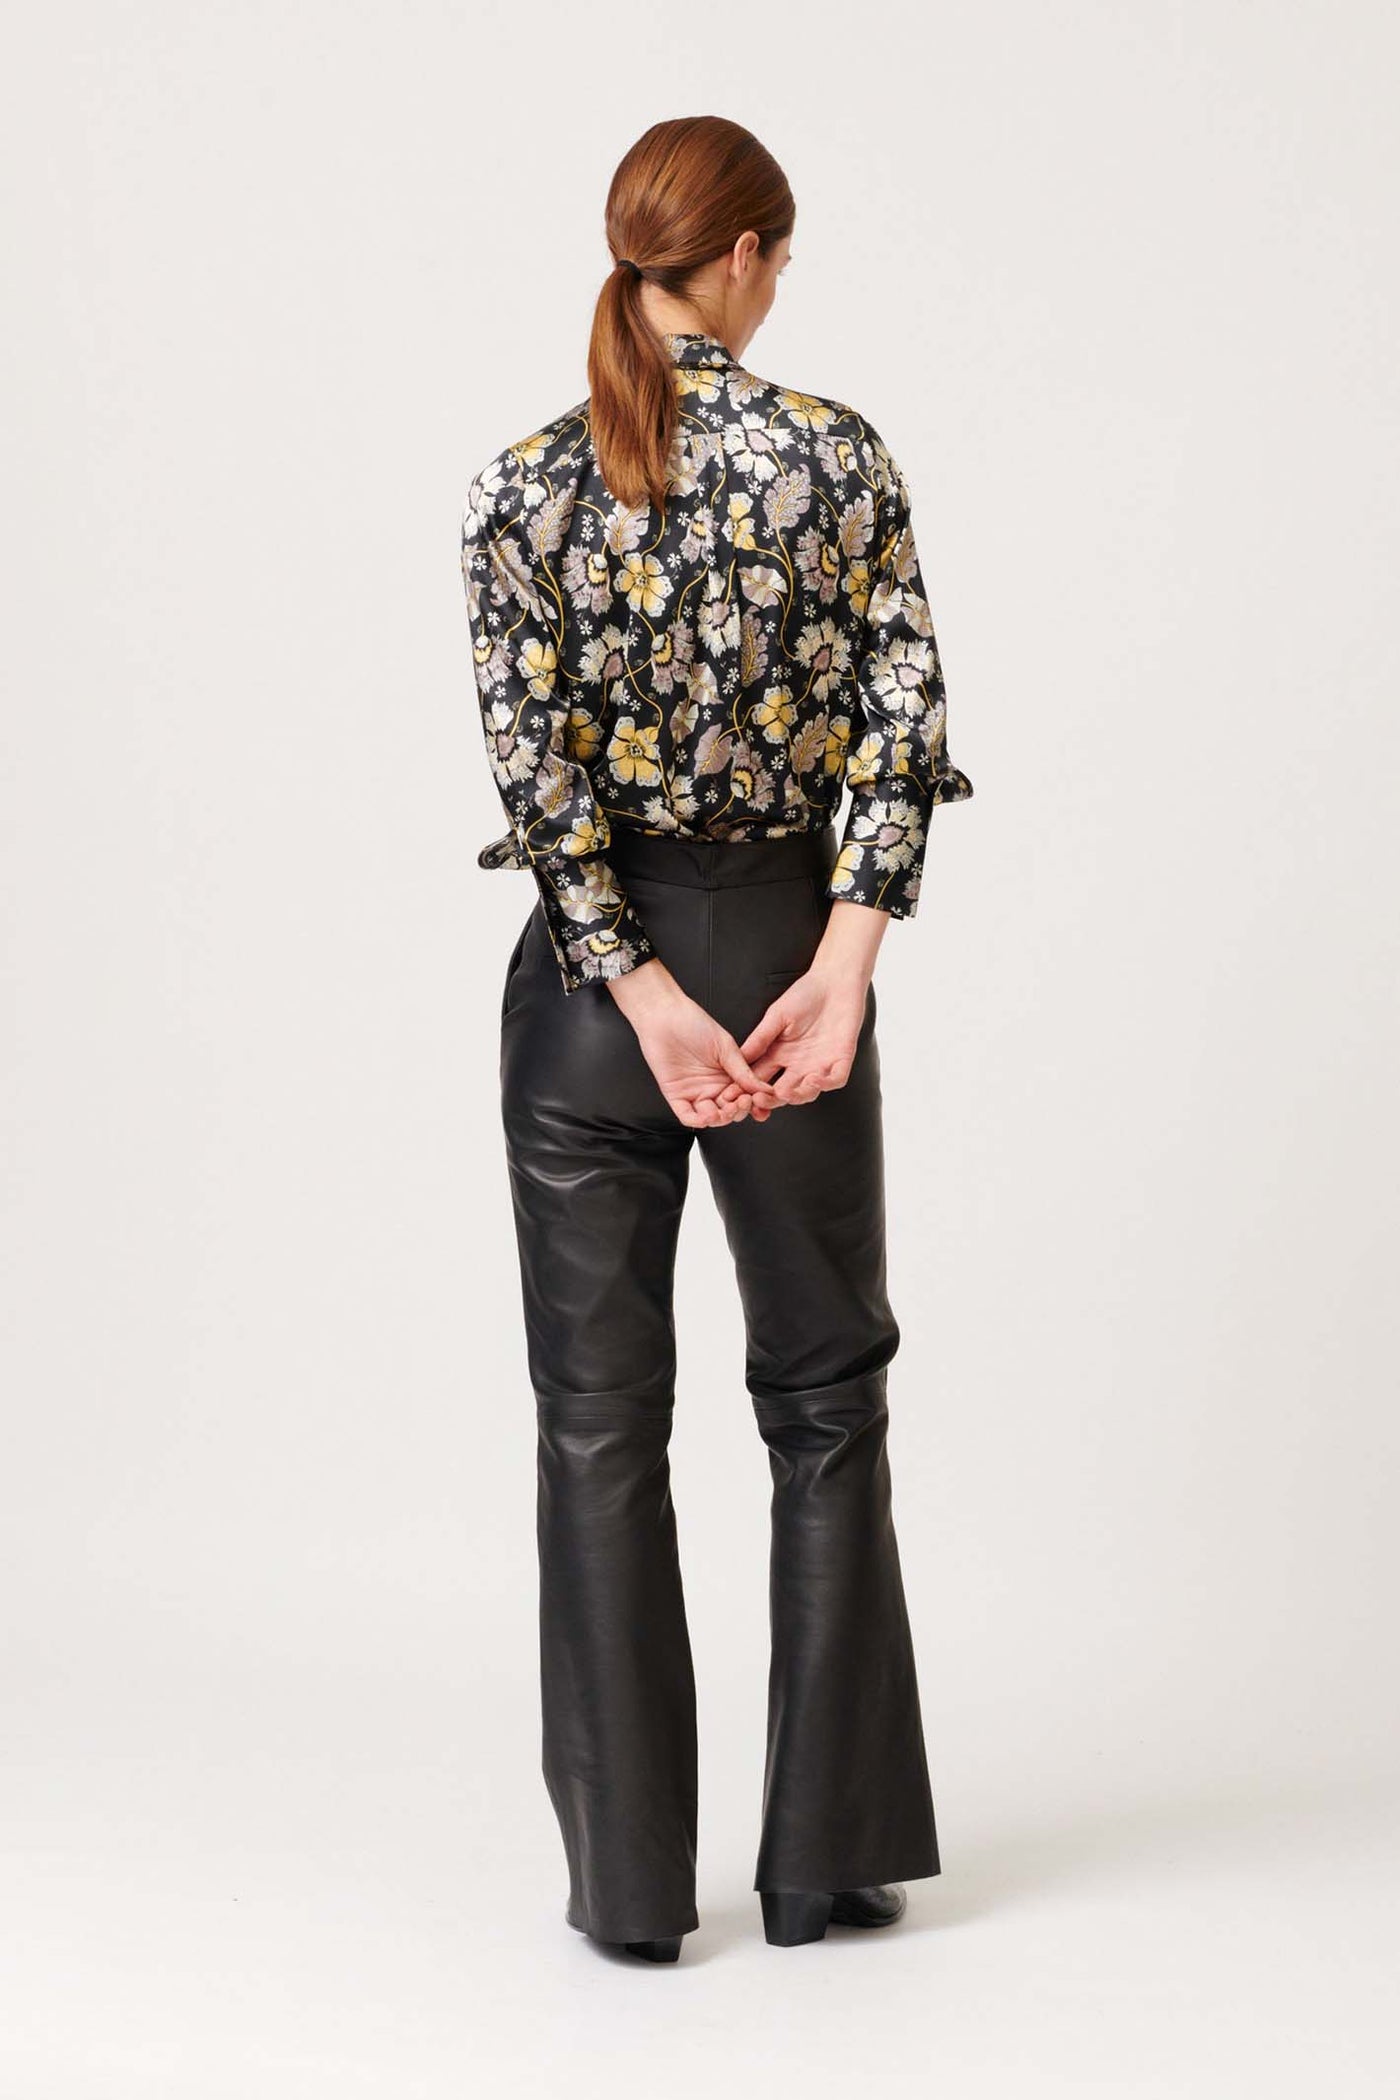 Dea Kudibal Pauline Black Floral Print Shirt With Bow - Lonah Boutique